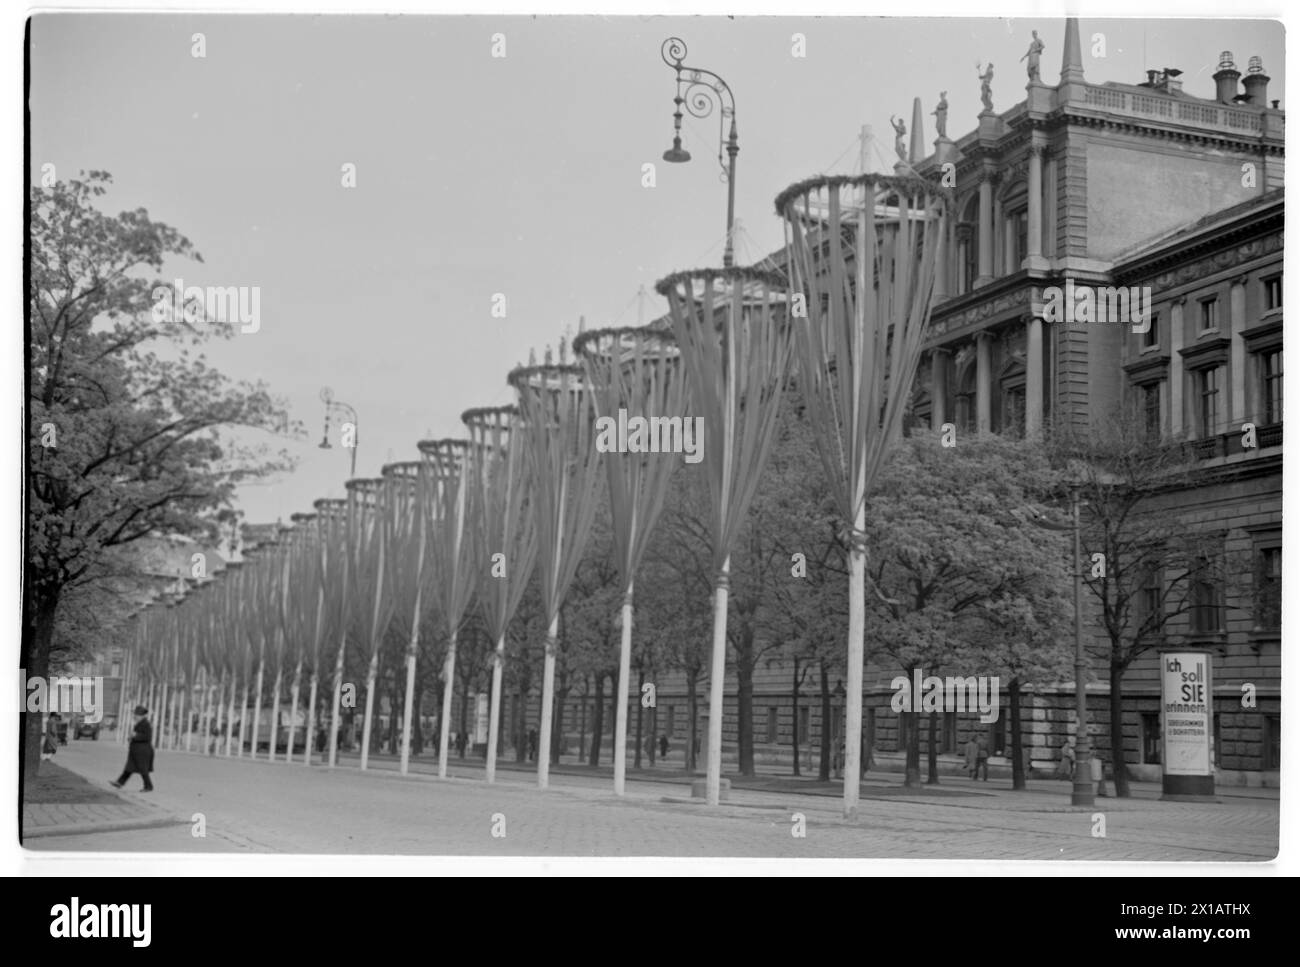 Giorno di maggio 1938 a Vienna, vista verso la Ringstrasse con molti sindaci decorati presso l'università, 01.05.1938 - 19380501 PD0101 - Rechteinfo: Diritti gestiti (RM) Foto Stock